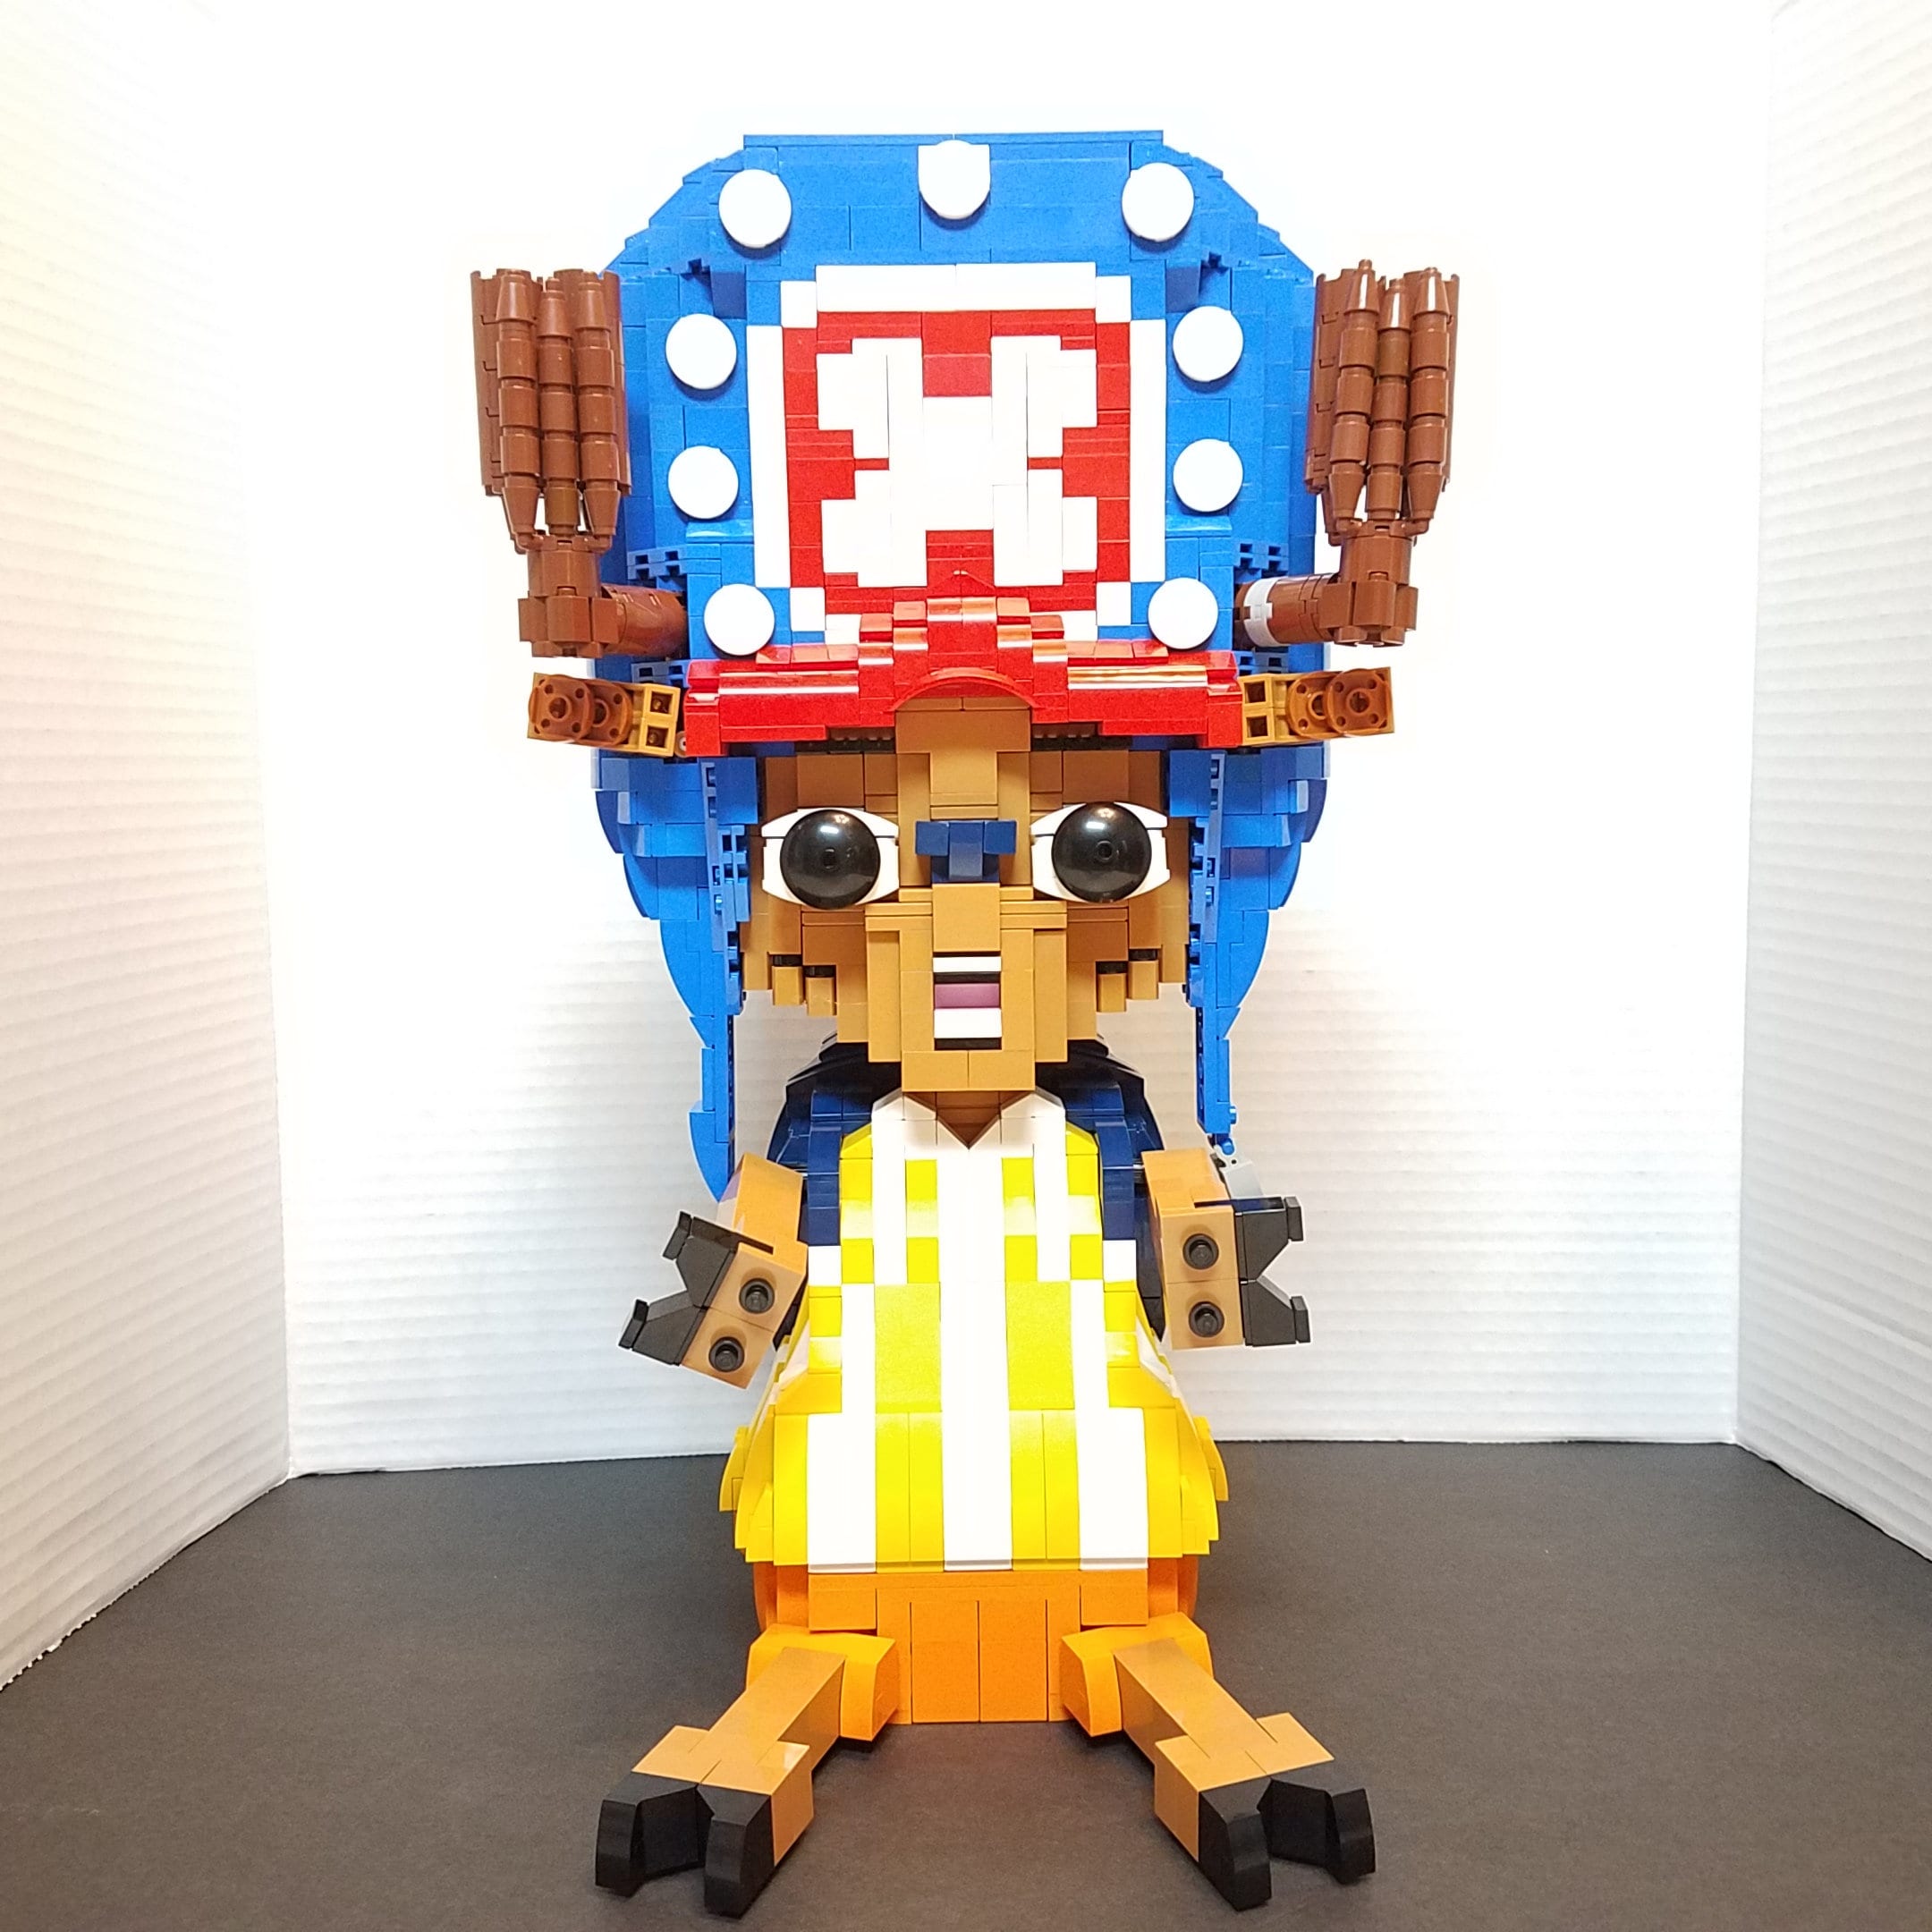 Lego One piece - Achetez des produits One piece officiels dans la